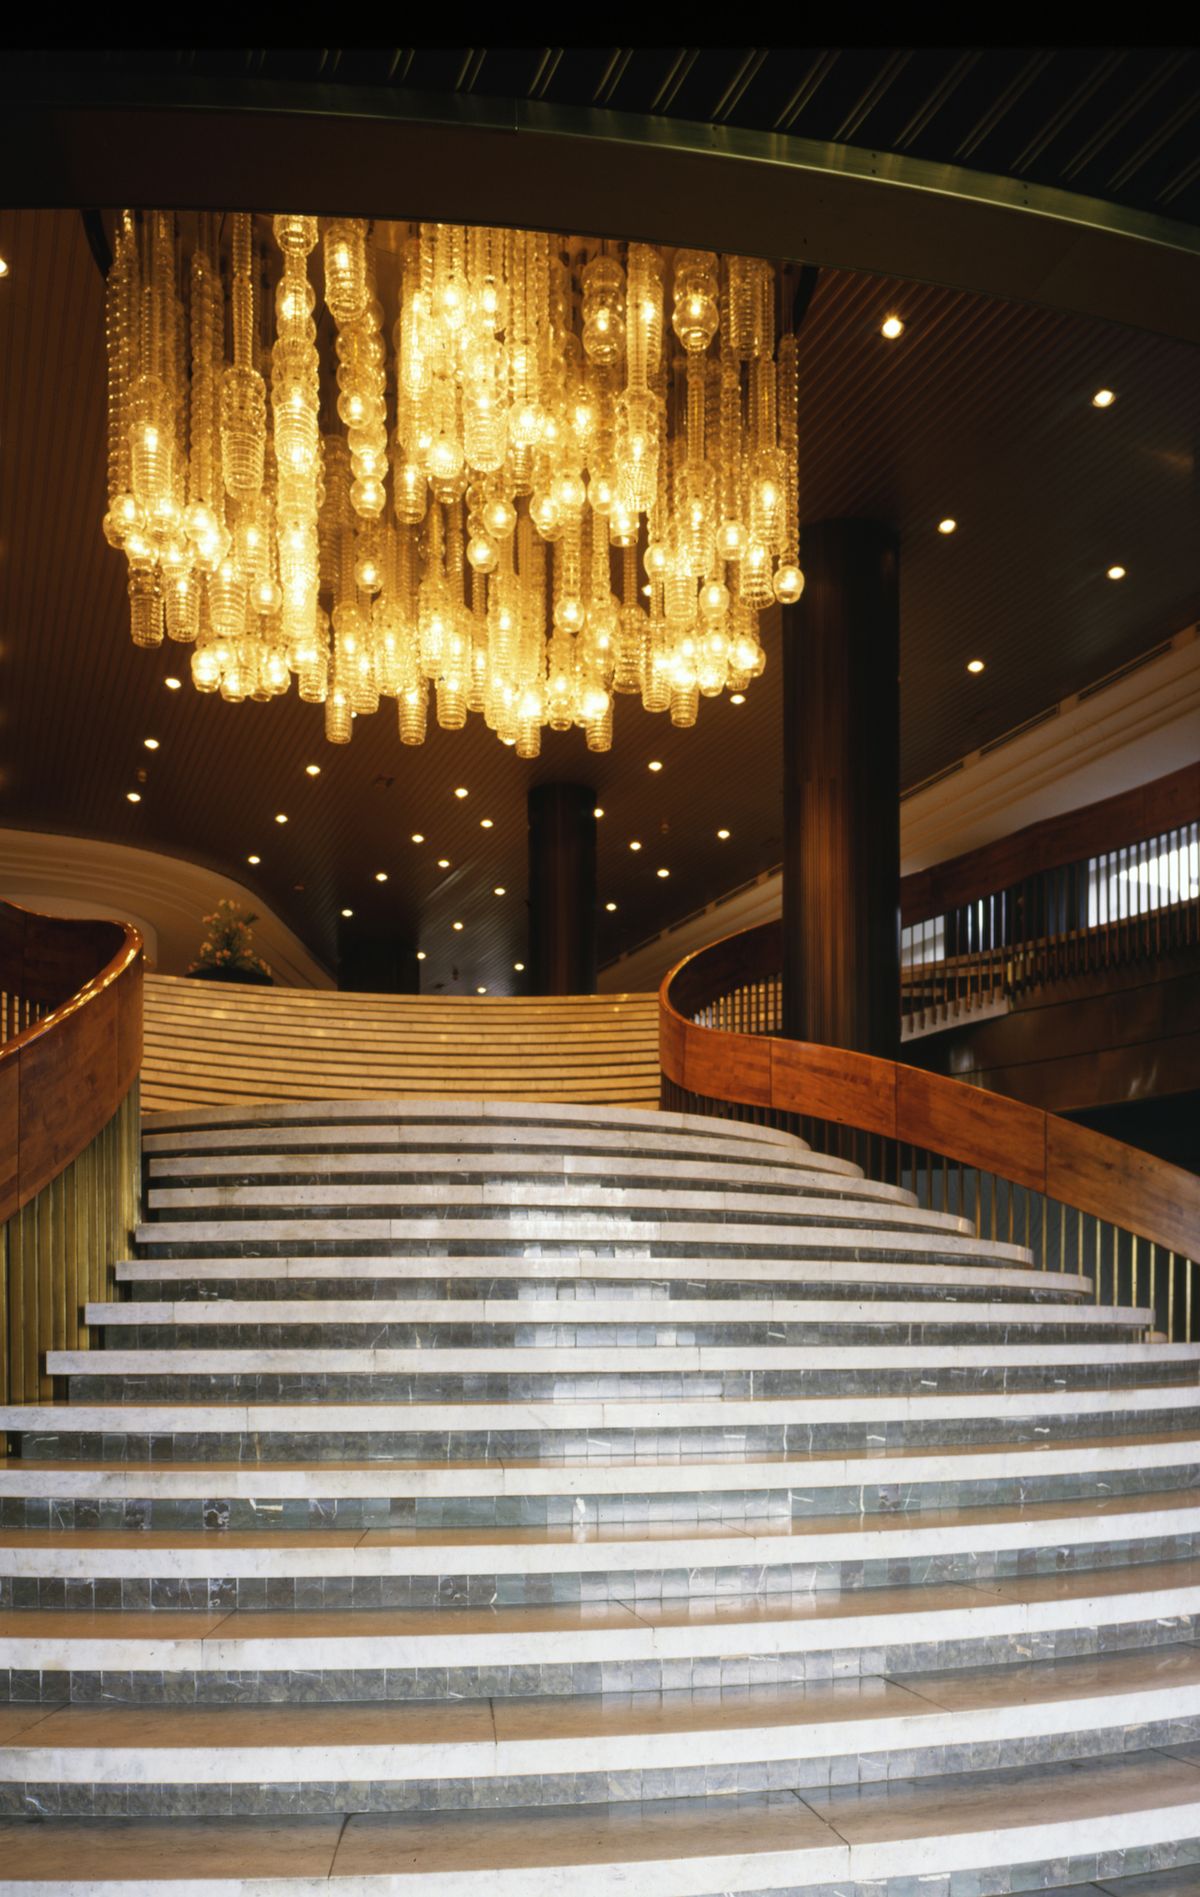 Lustry v hotelu Praha (1981–2014) navrhl světově proslulý sklářský výtvarník Stanislav Libenský.